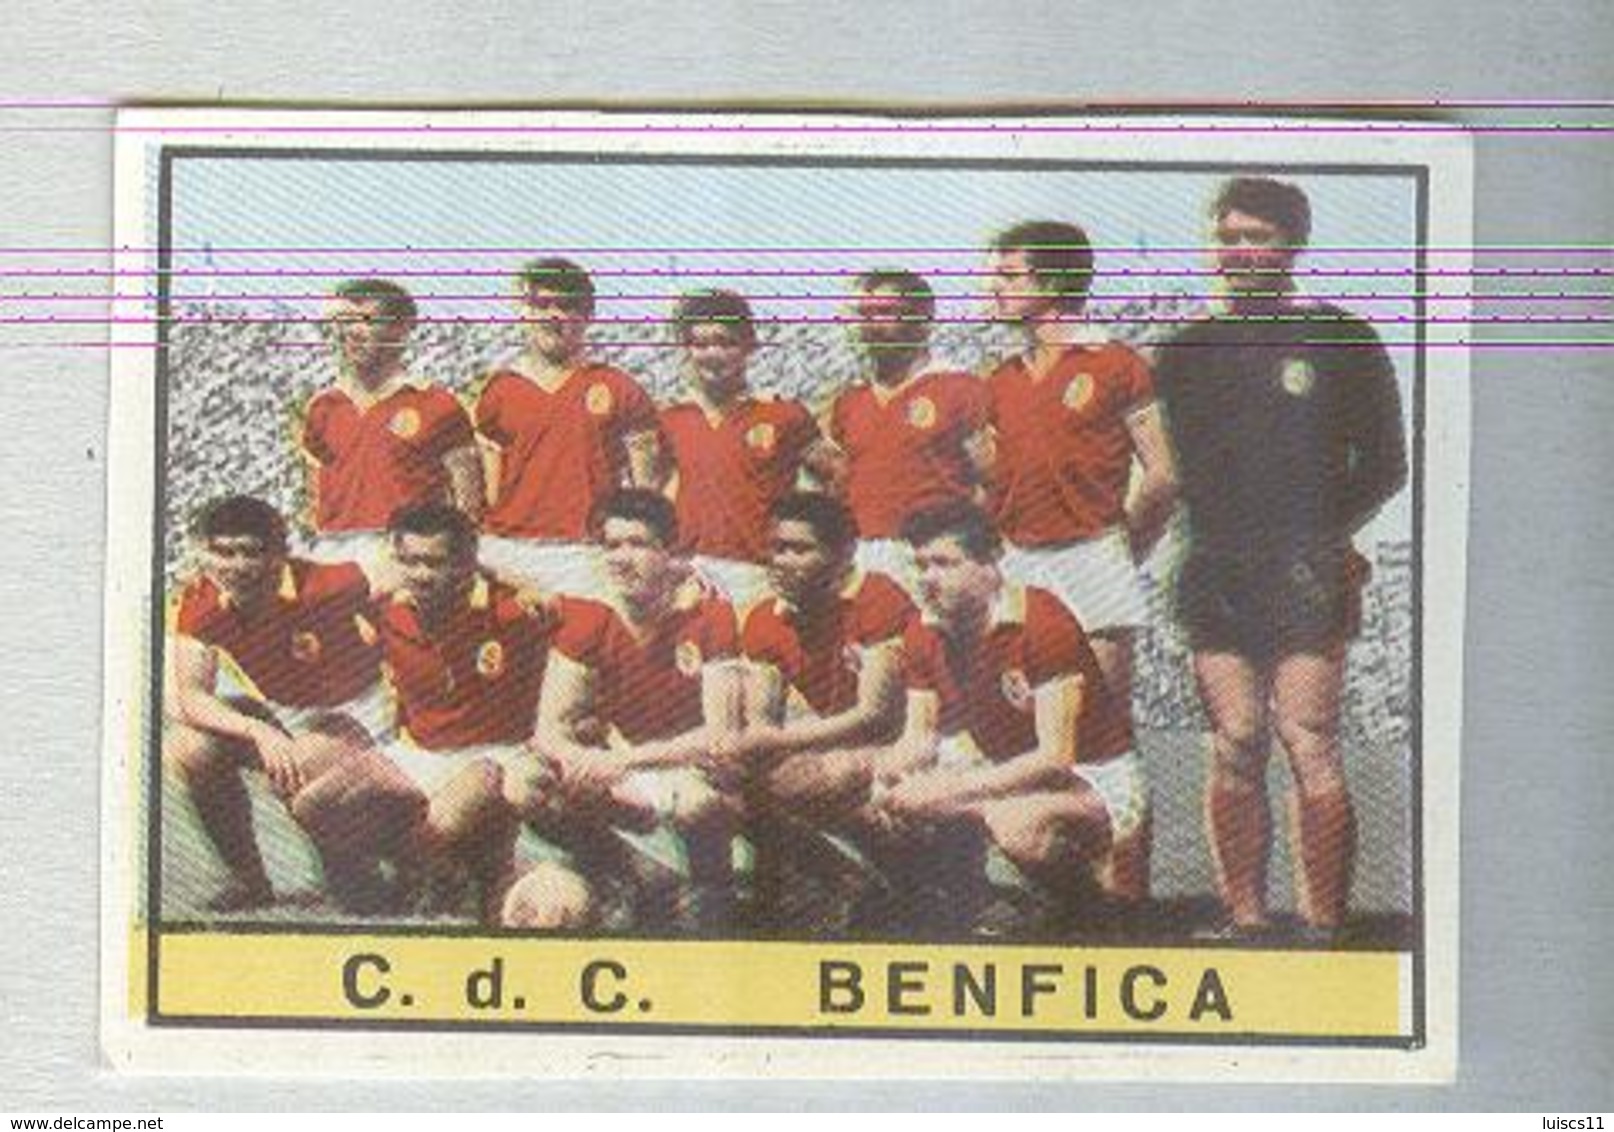 BENFICA CALCIO TEAM .....EUSEBIO..MUNDIAL....SOCCER..WORLD CUP....FOOTBALL..FIFA - Trading Cards